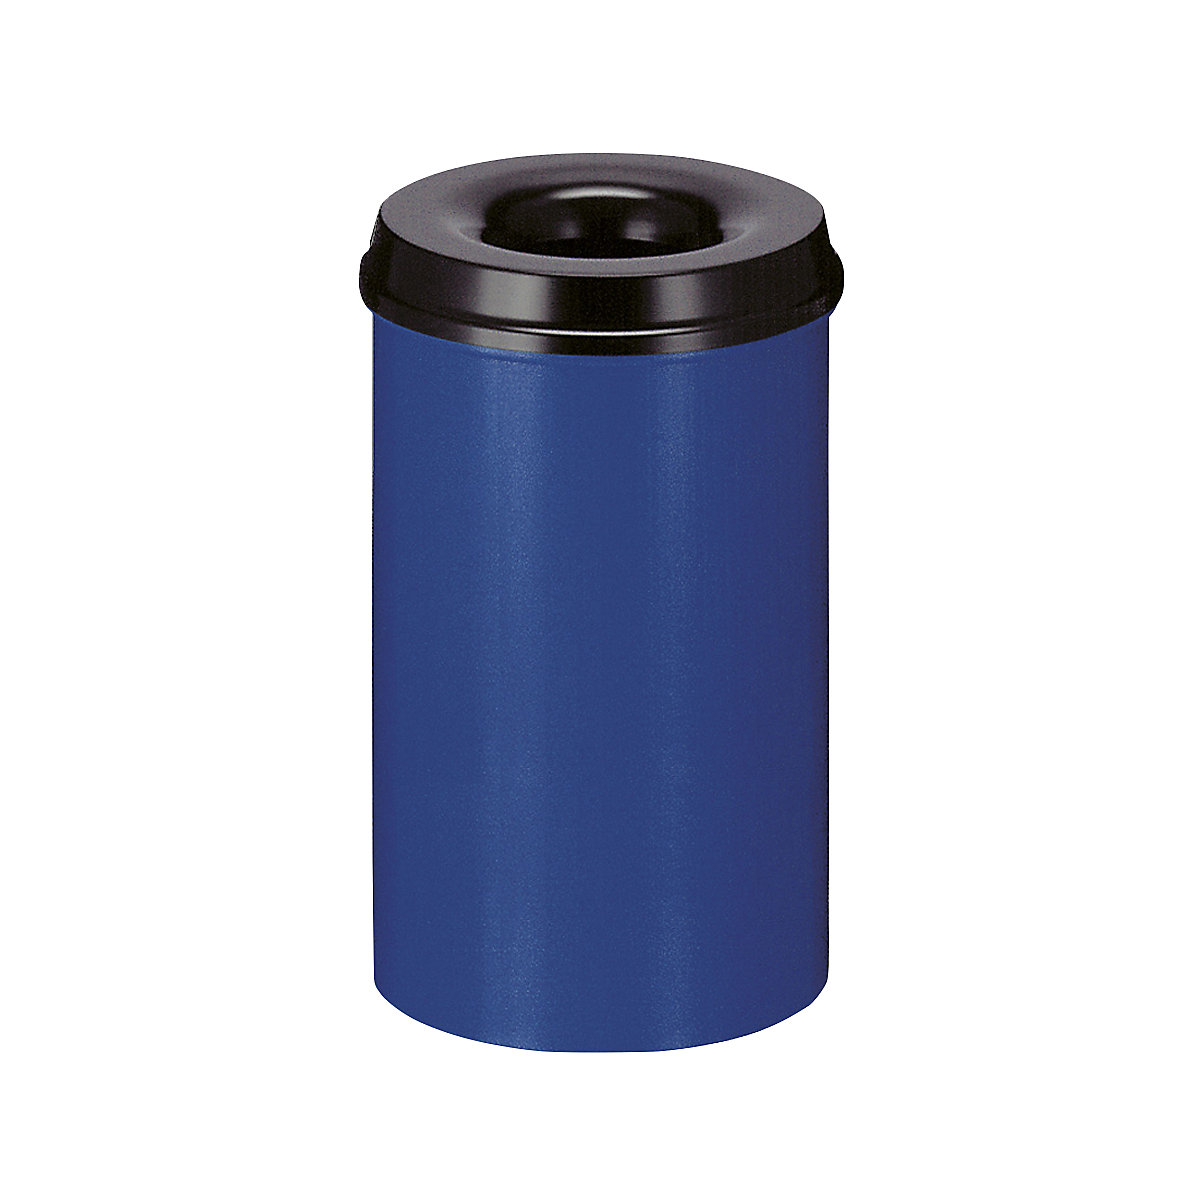 Sicherheits-Papierkorb, Stahl, selbstlöschend, Volumen 20 l, HxØ 426 x 260 mm, Korpus blau / Löschkopf schwarz-4